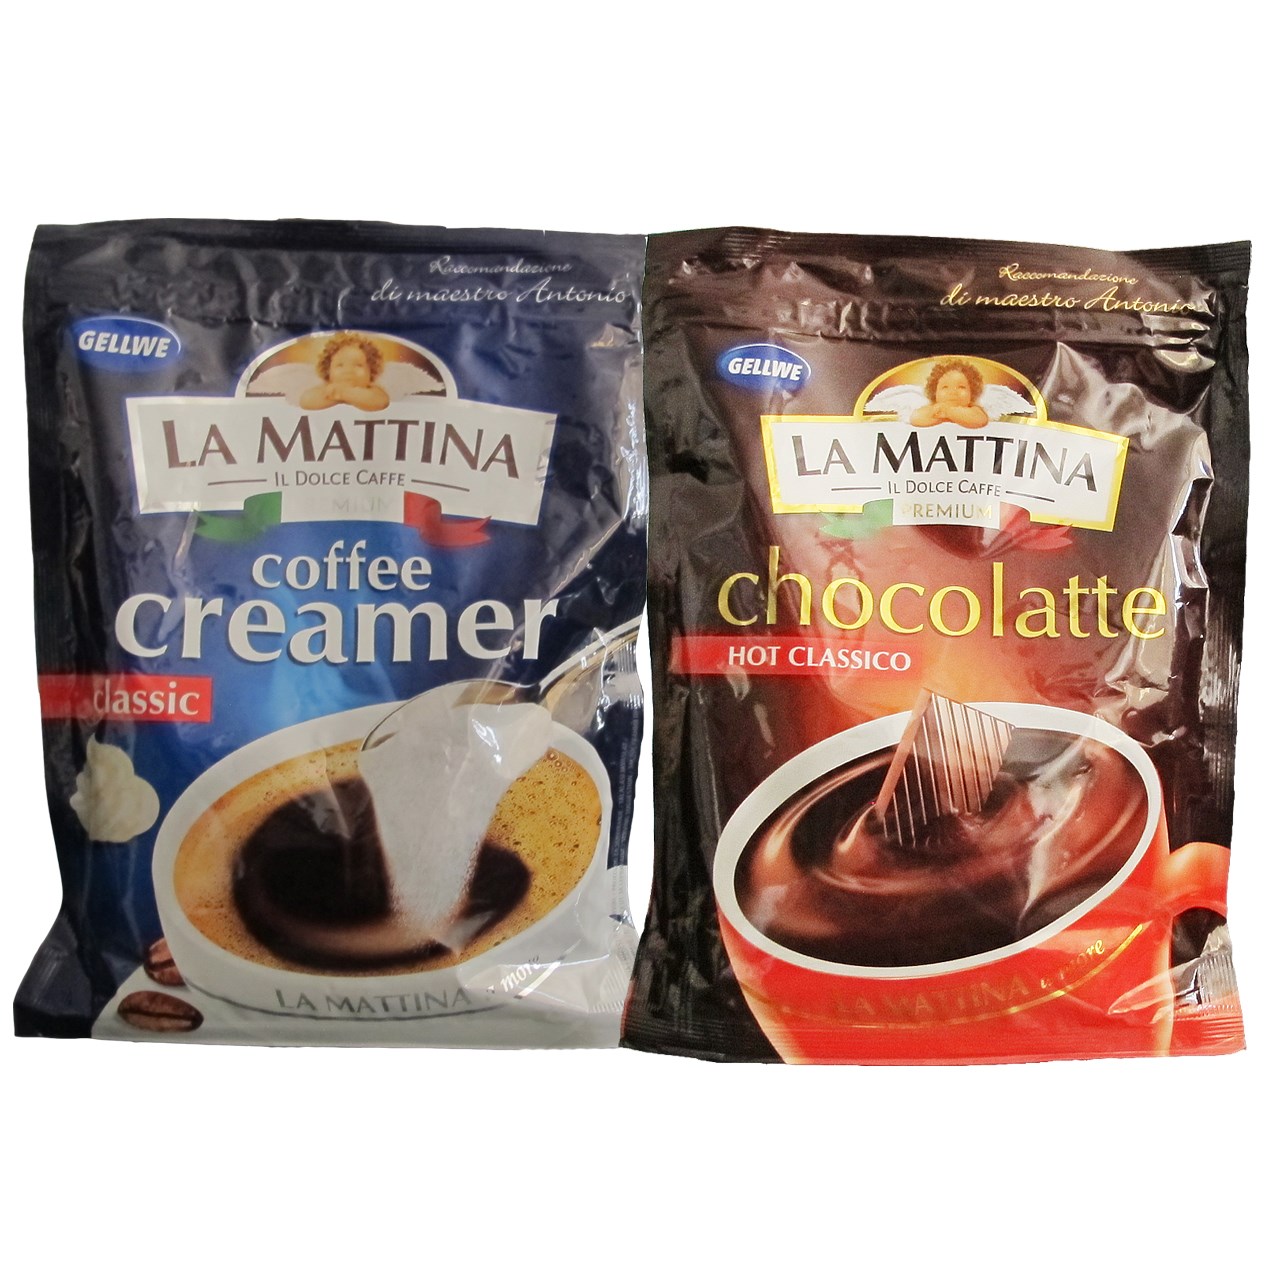 بسته هات چاکلت لاماتینا مدل Hot Classico به همراه بسته پودر شیر لاماتینا مدل Coffee Creamer